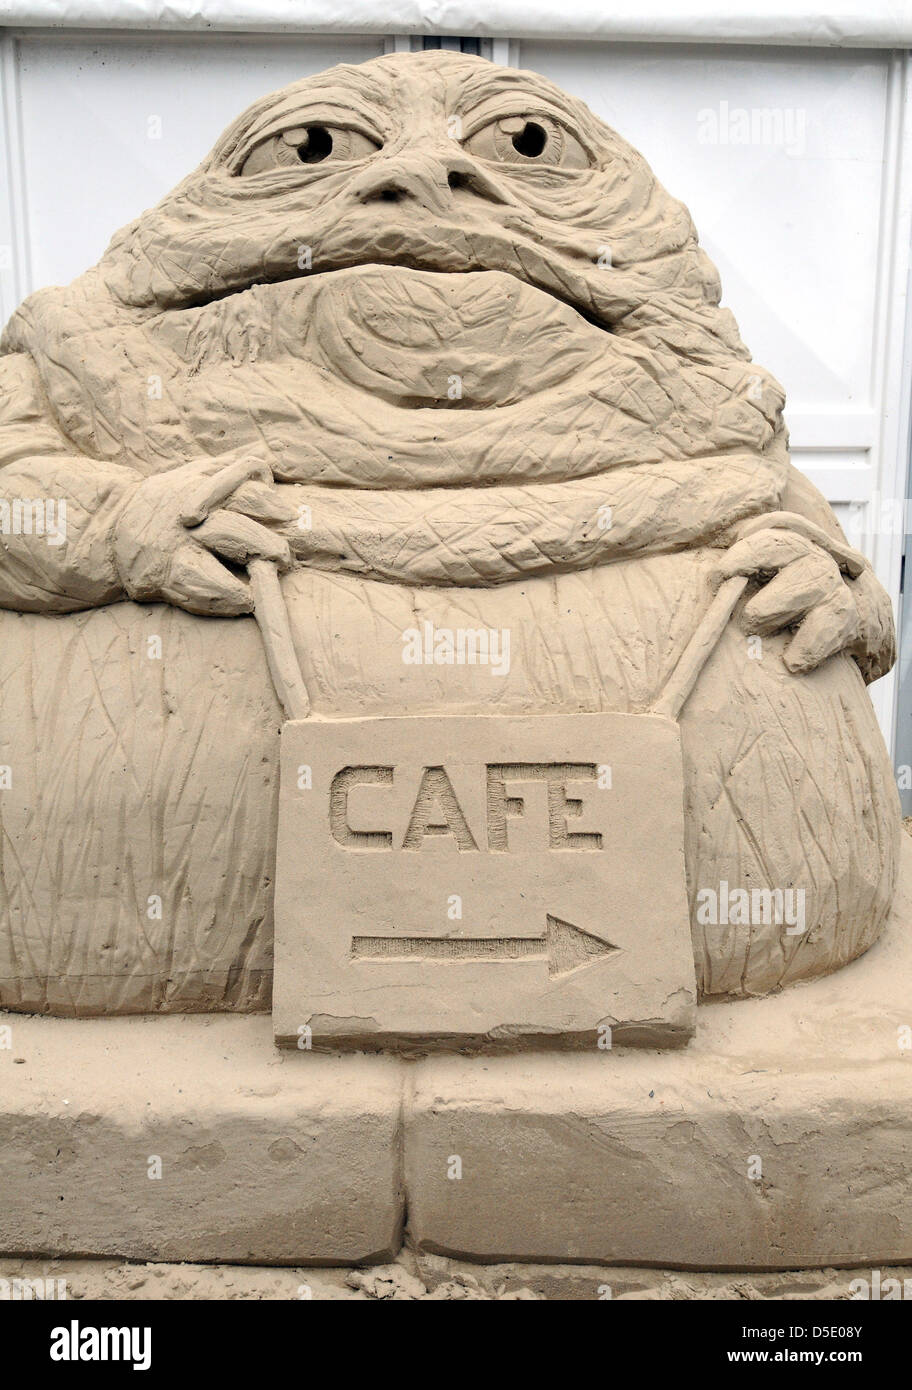 Eröffnung der weltweit ersten Science-Fiction Themen Sandskulpturen Ausstellung bei Sandworld in Weymouth, Dorset, Großbritannien. Stockfoto